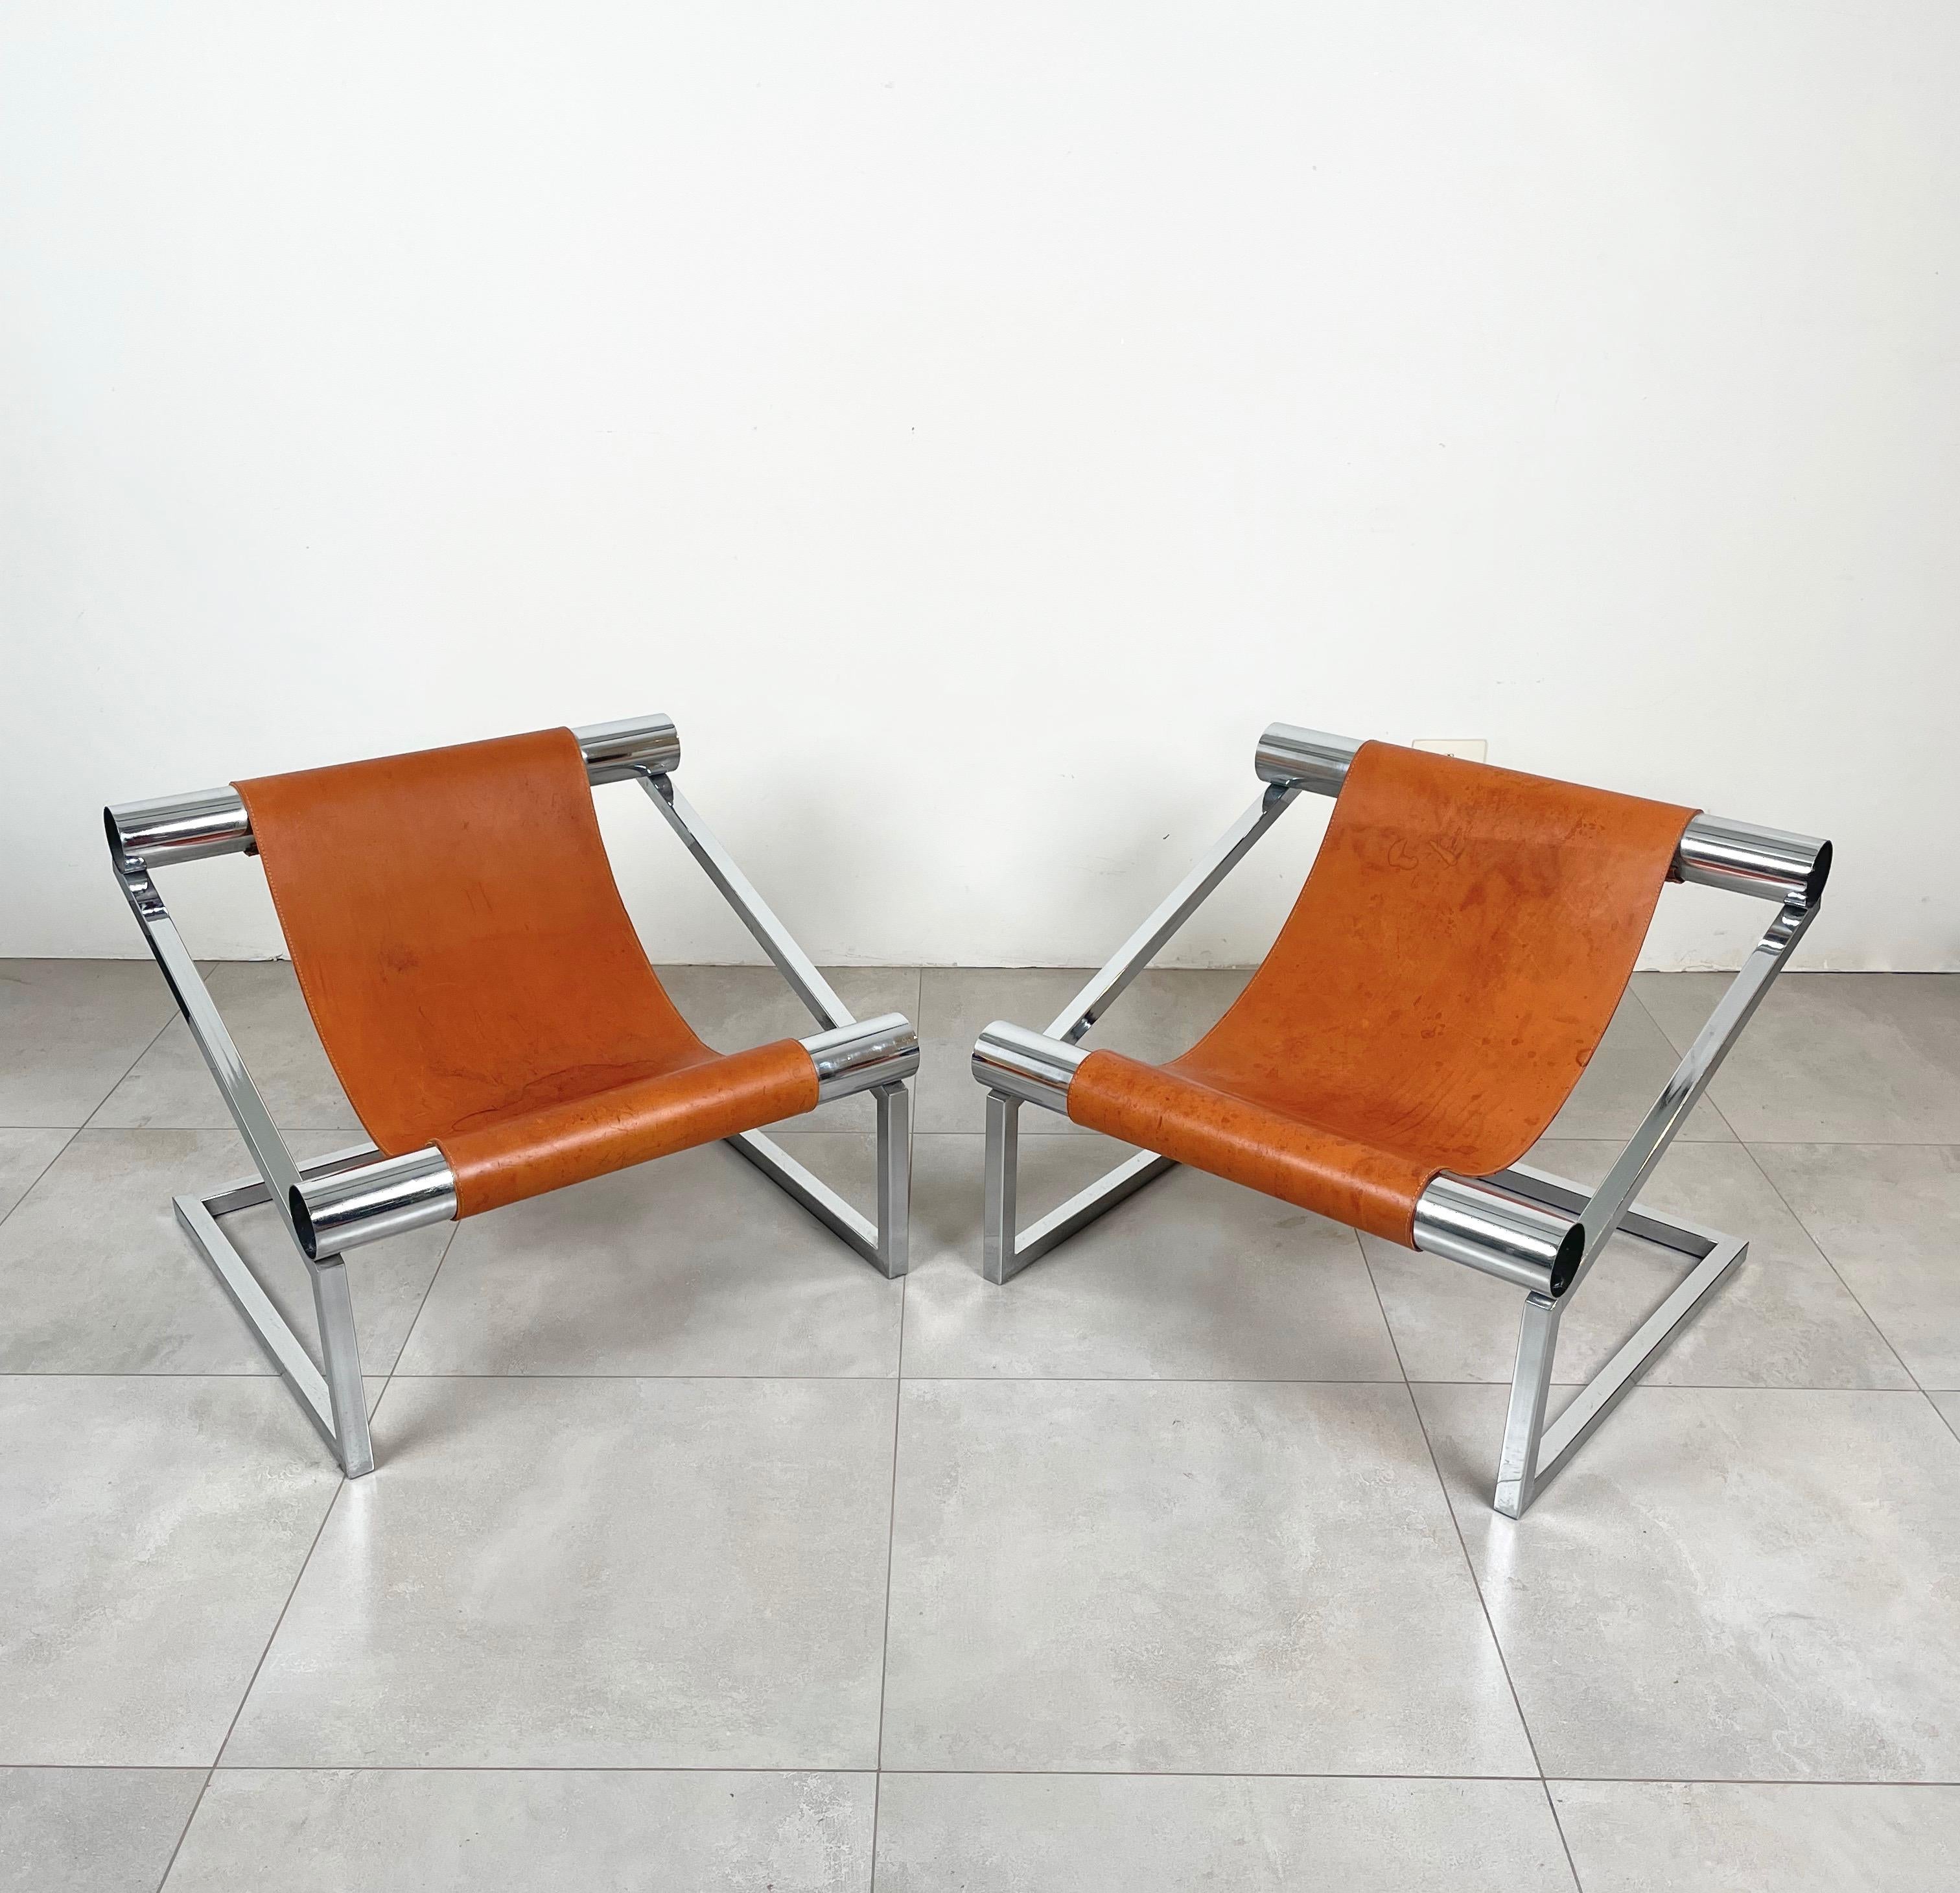 Belle paire de fauteuils de style Mid-Century Modern avec une structure en chrome et des sièges en cuir brun. 

Fabriqué en Italie dans les années 1970.